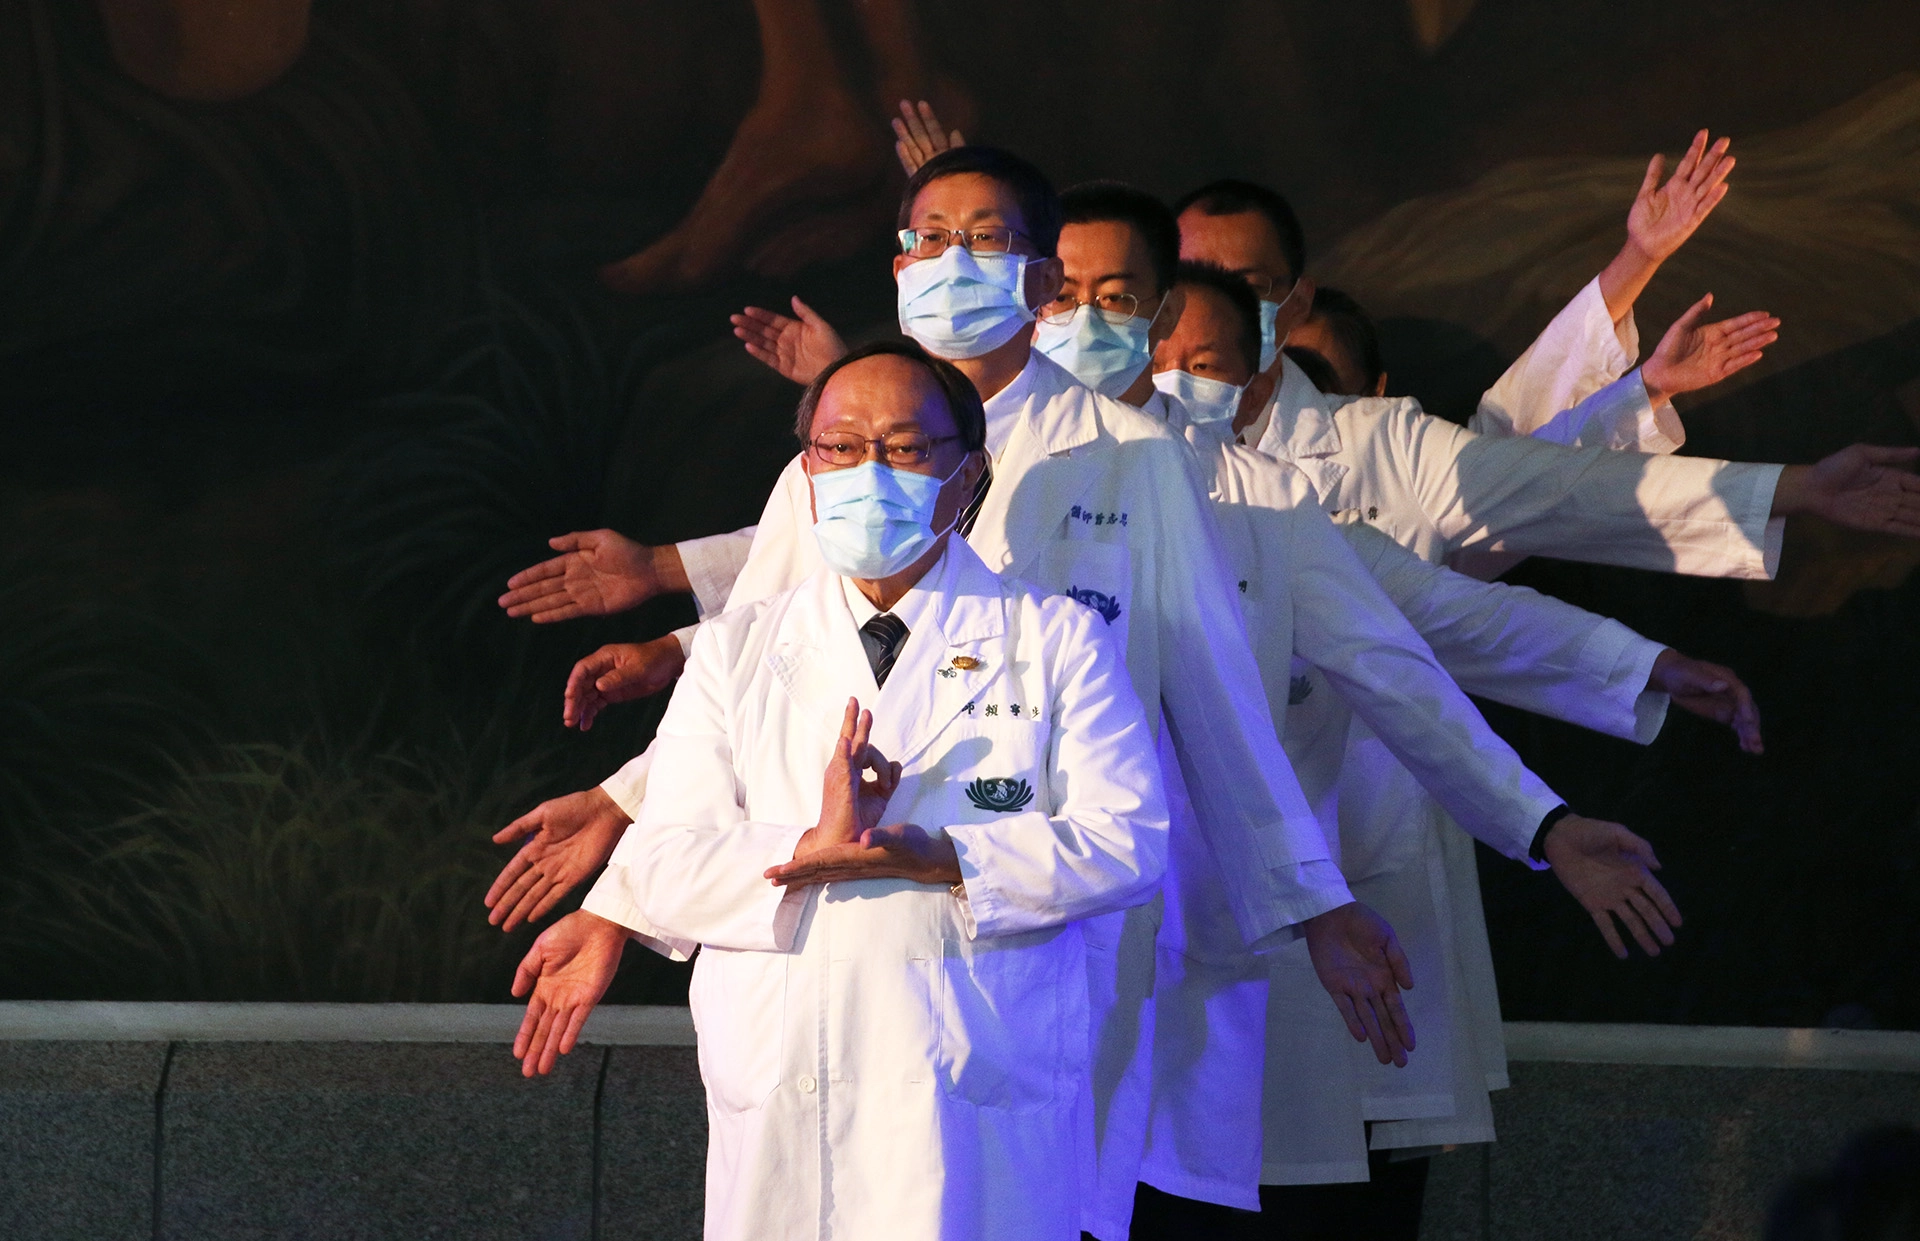 大林慈濟醫院於8日舉辦二十周年慶，大林醫護與行政同仁賣力演出佛教經典音樂劇，與二十年來的醫療貢獻相呼應，為慶祝大會帶來動人的饗宴。